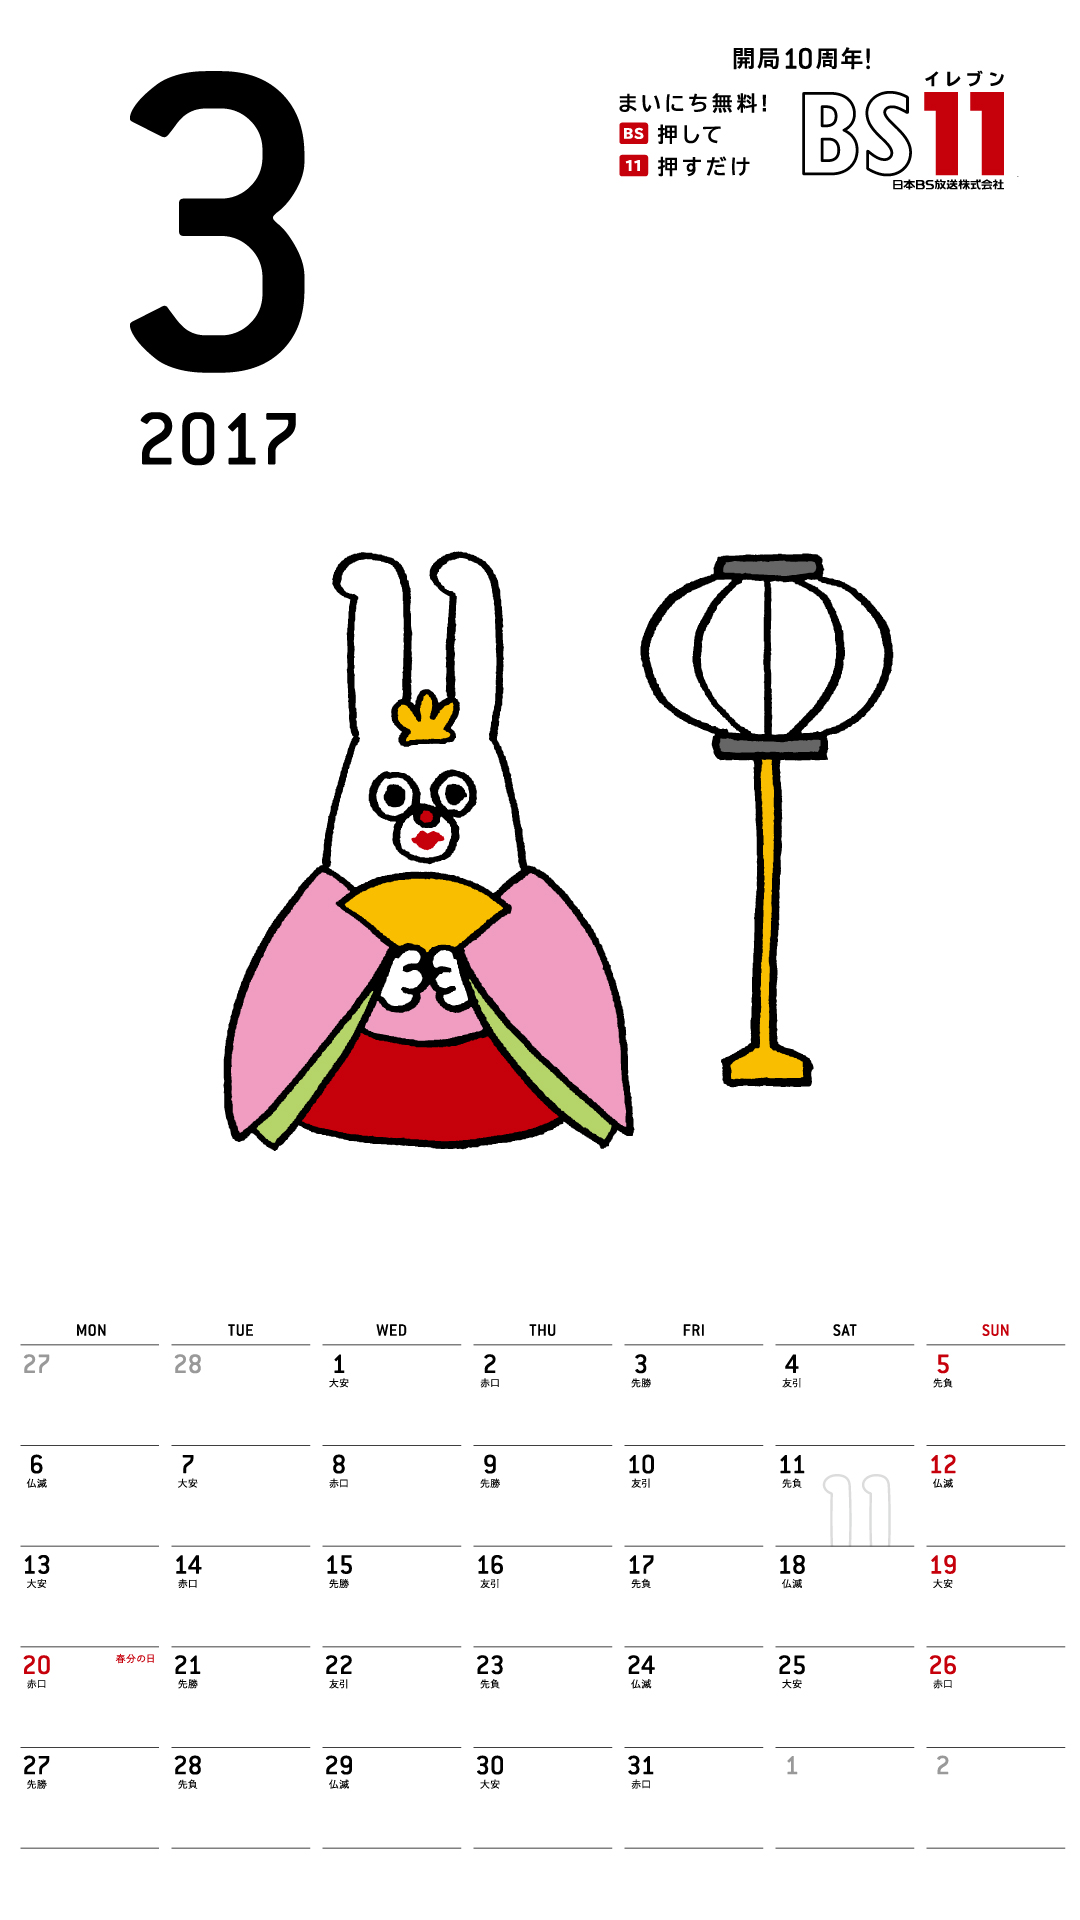 デジタルカレンダー2017年03月 Bs11 イレブン いつでも無料放送